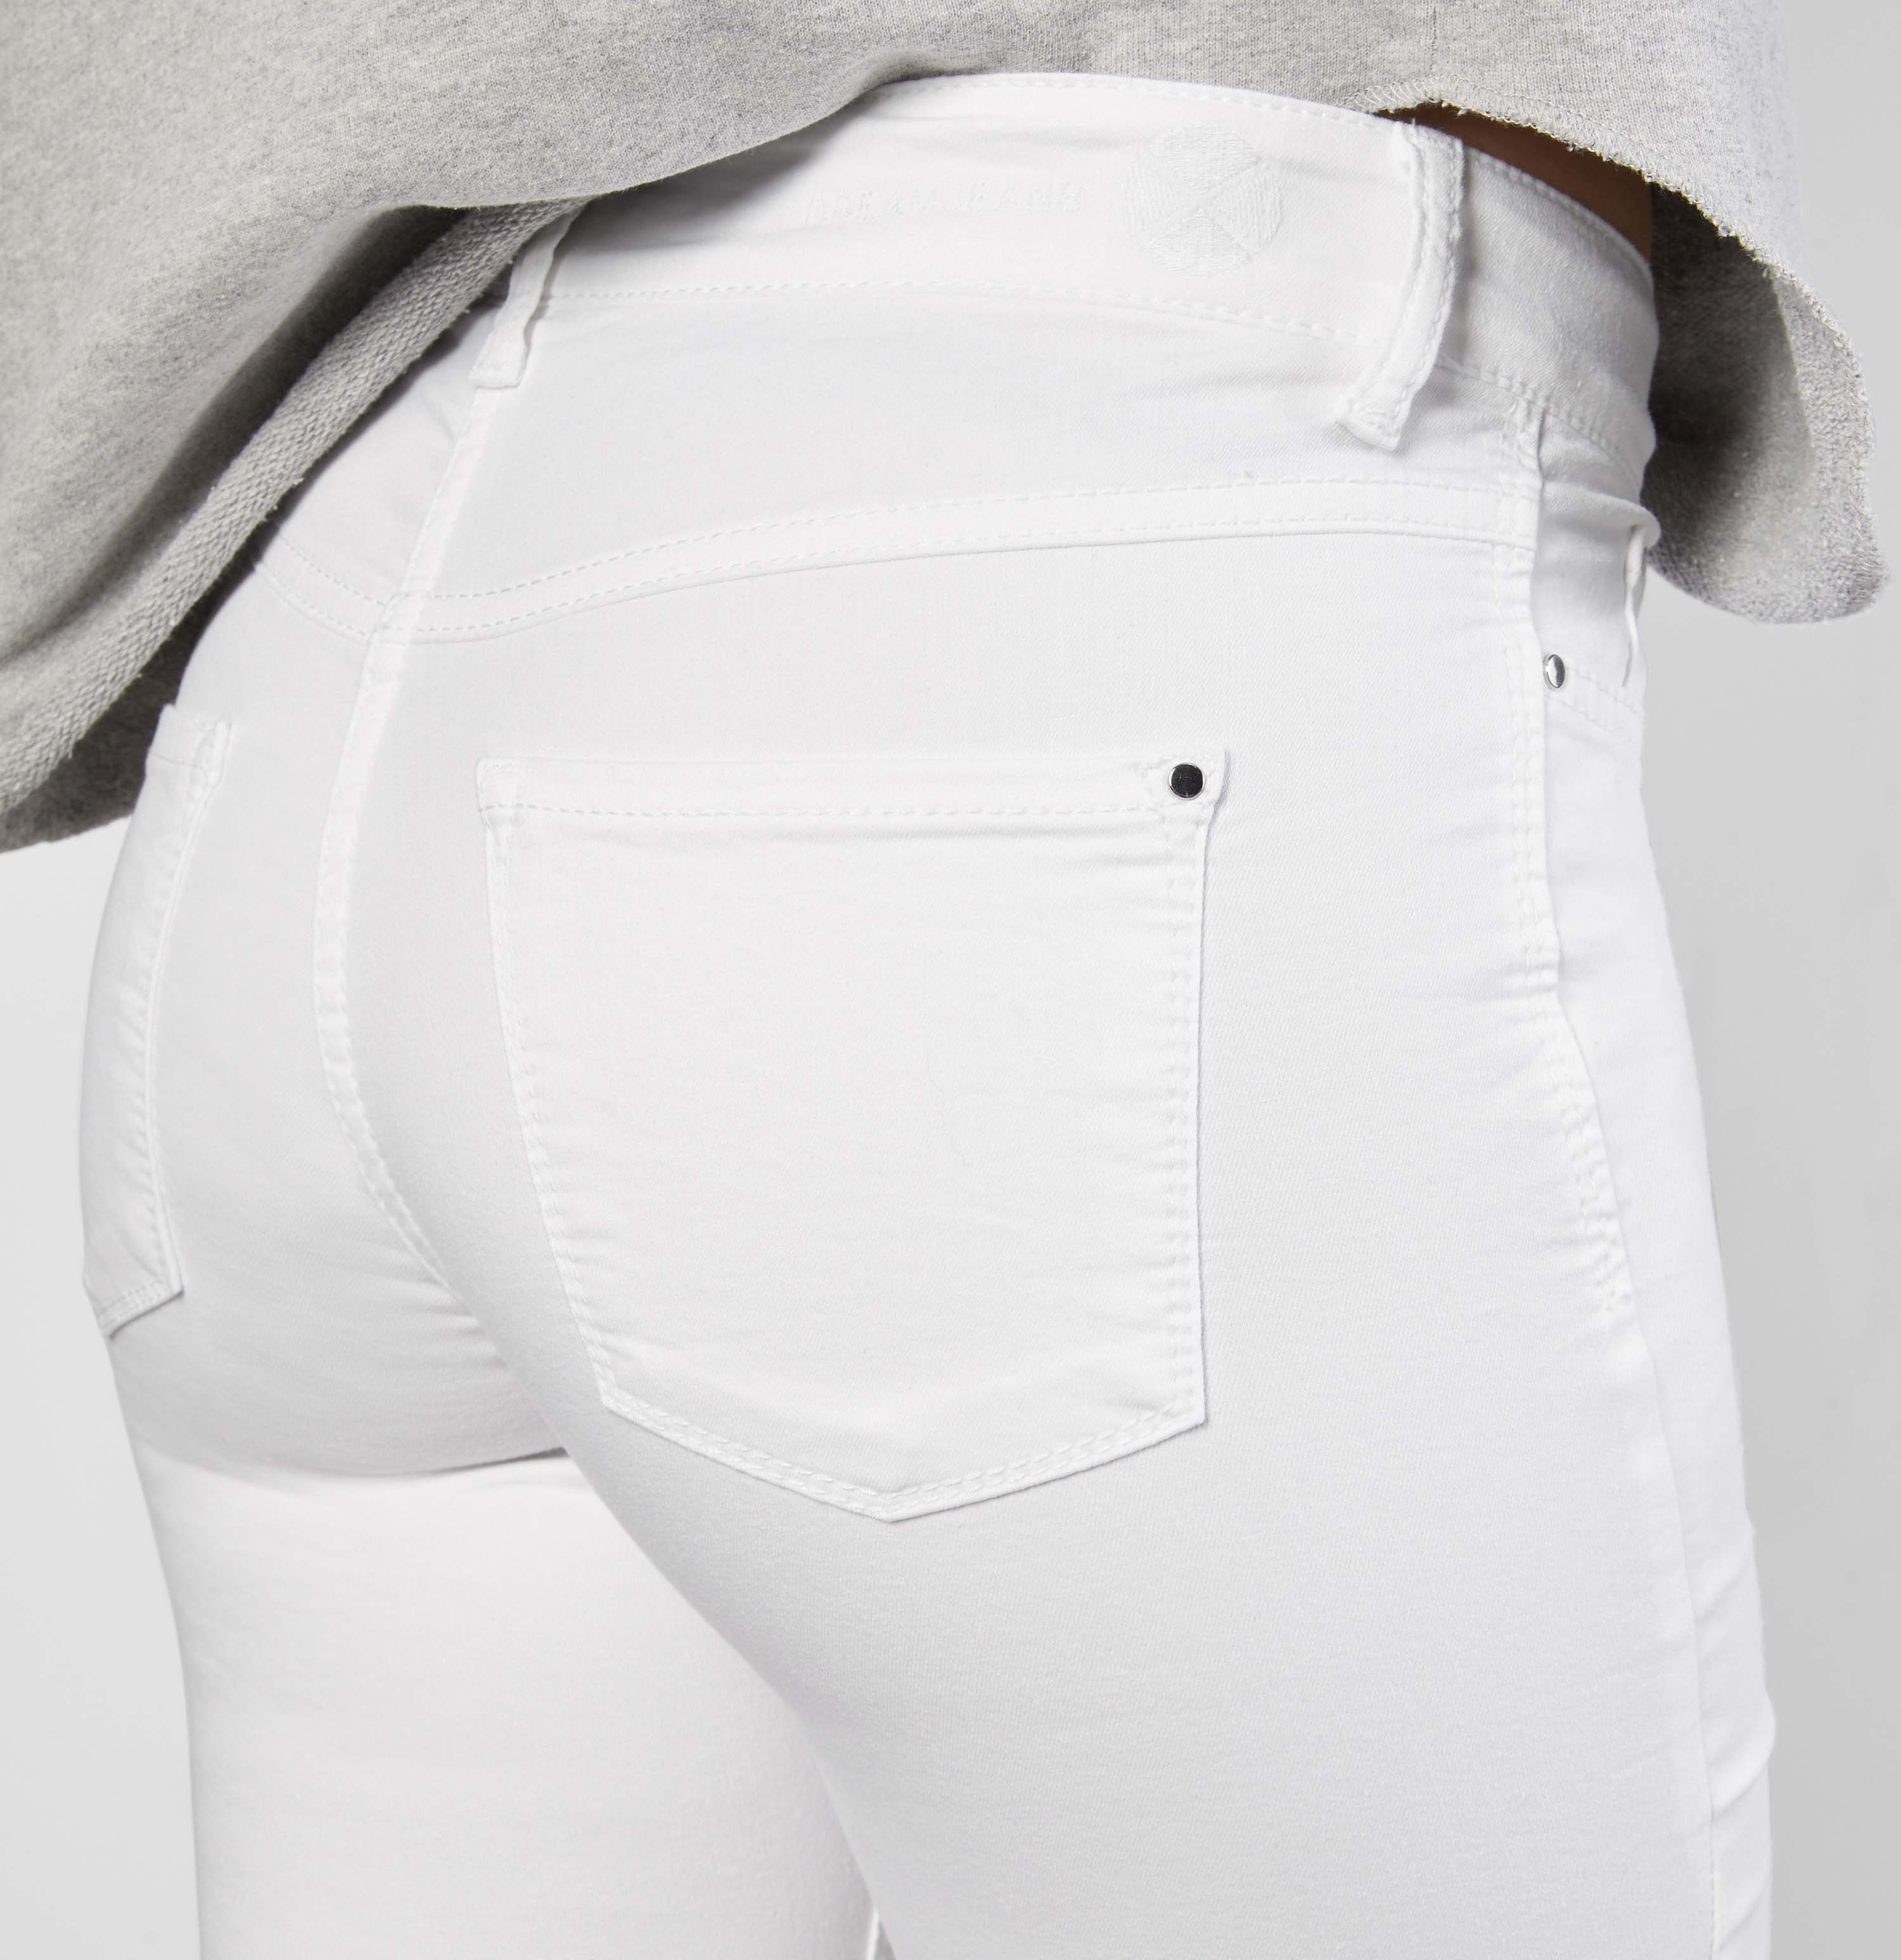 den perfekten whitedeni Hochelastische für Dream Skinny Skinny-fit-Jeans sorgt MAC Sitz Qualität